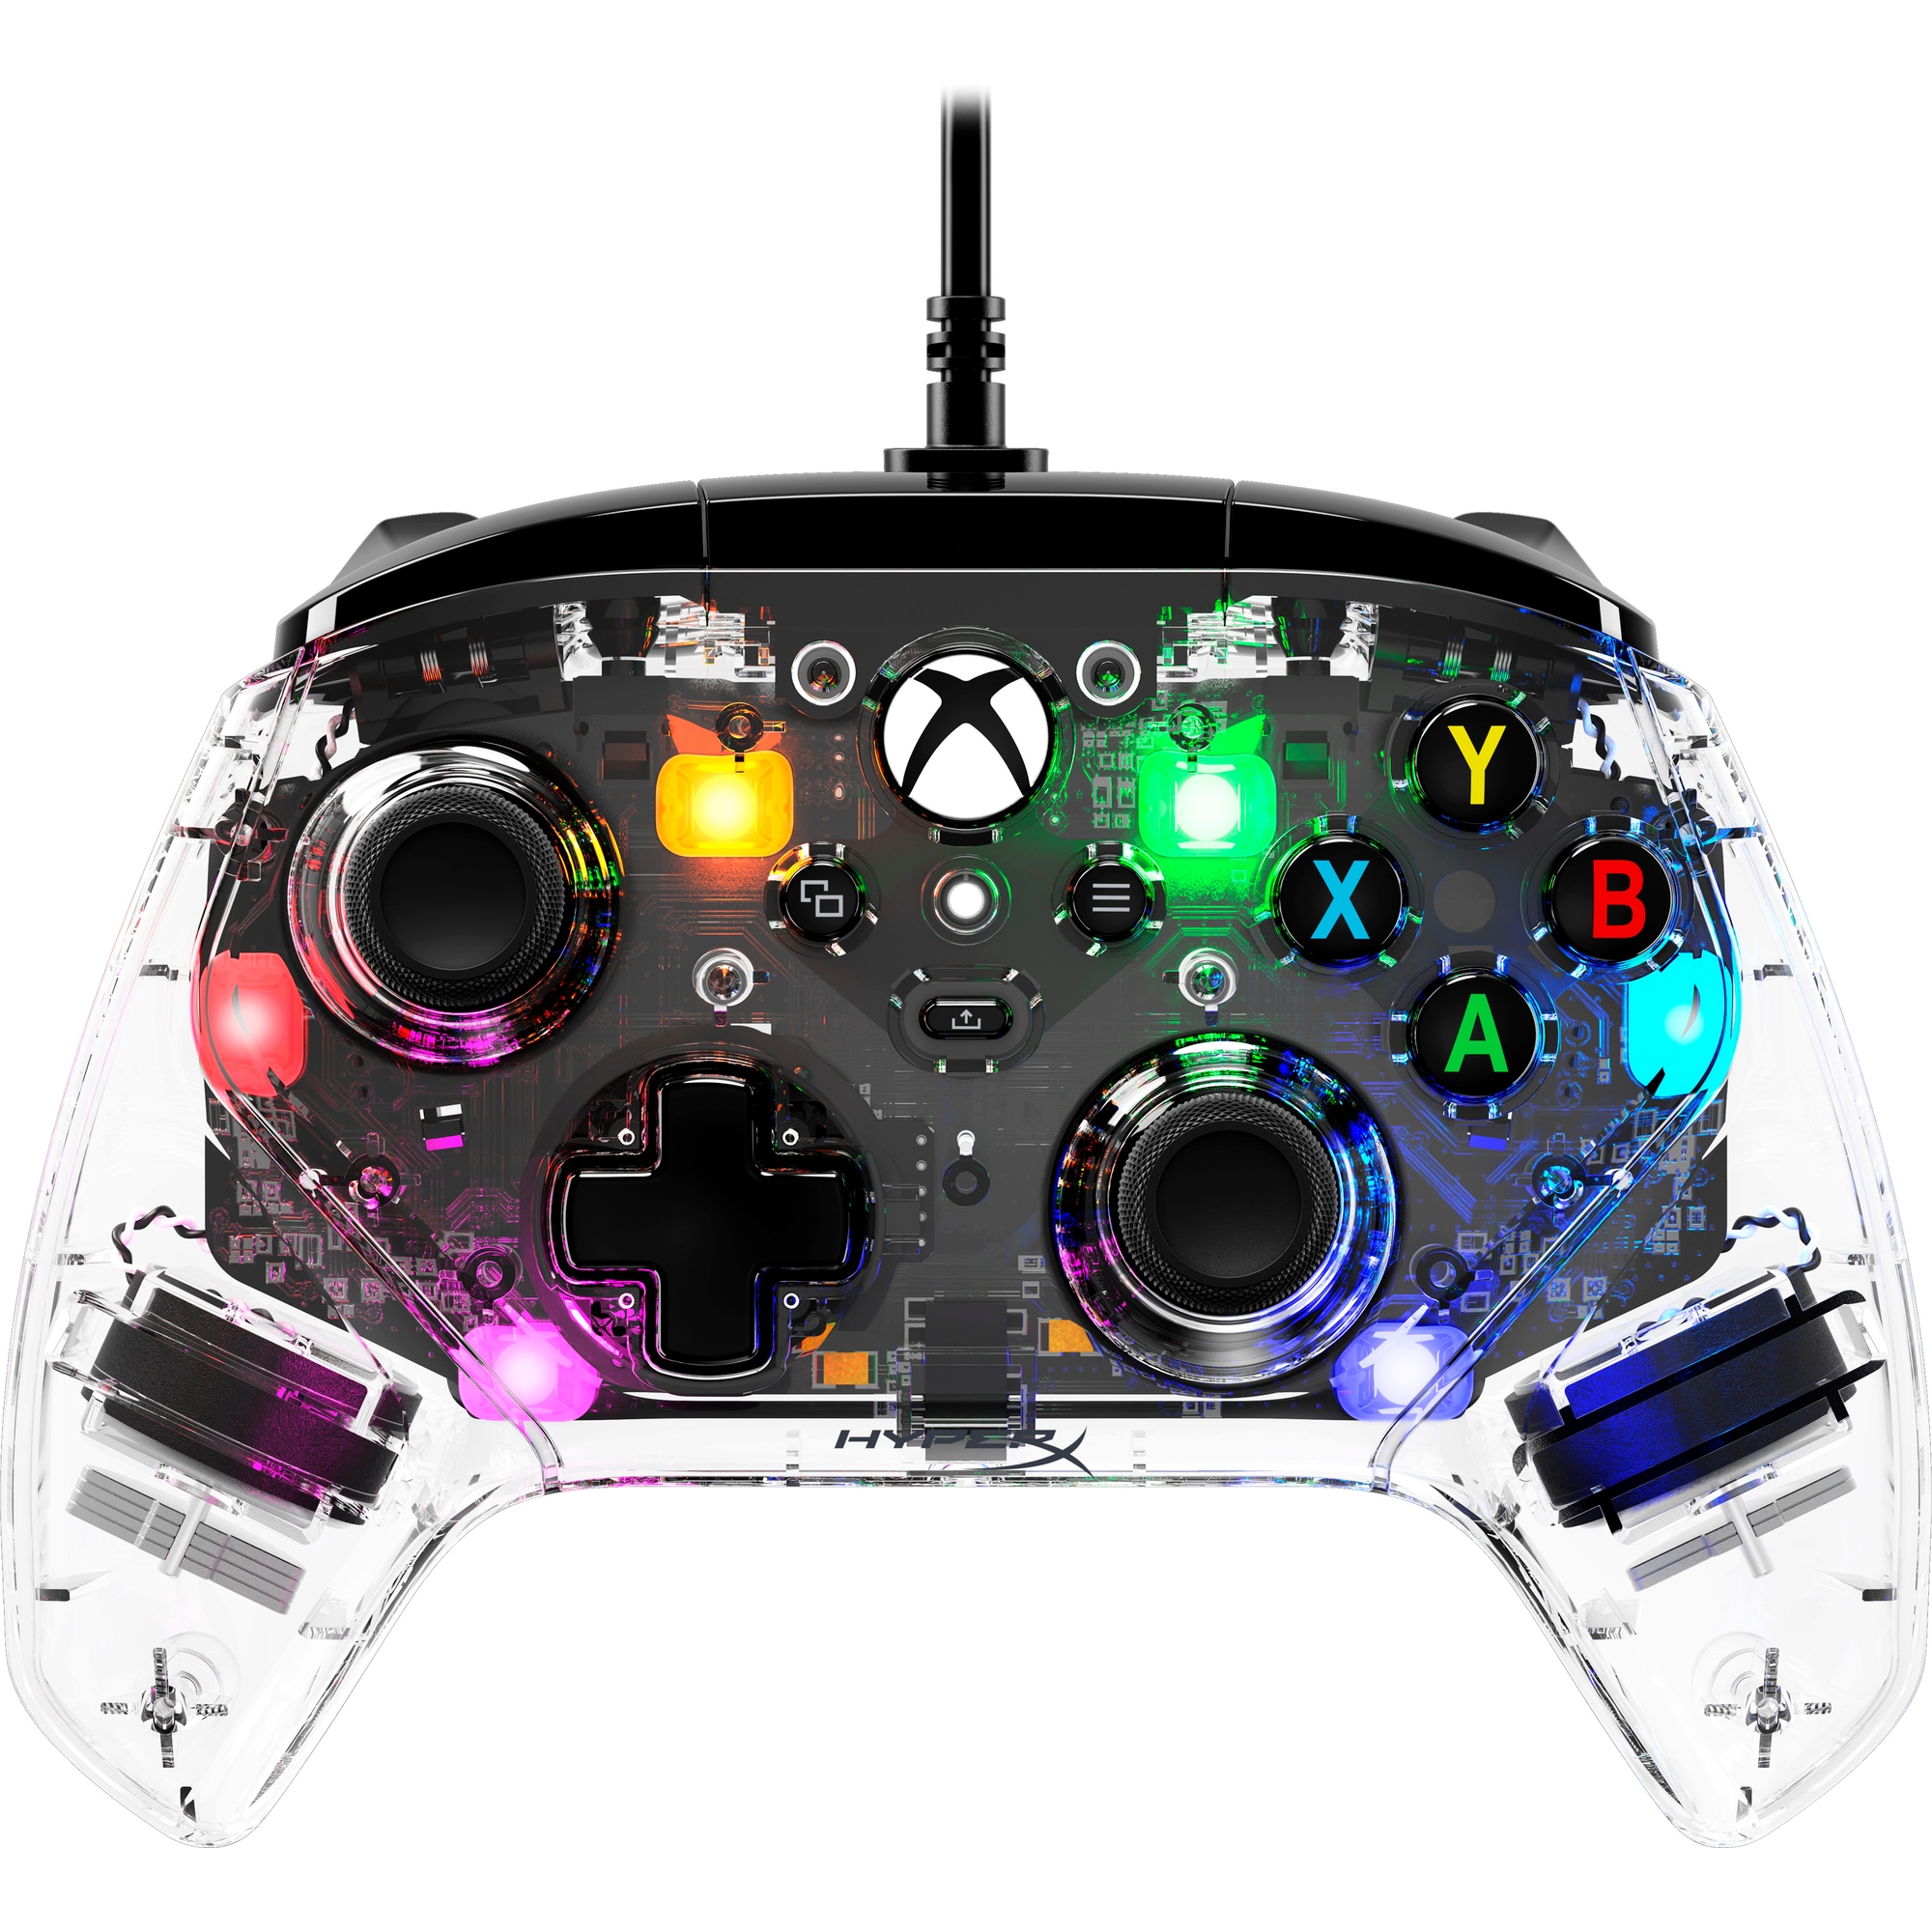 HyperX Clutch Gladiate RGB Gaming Controller - Příslušenství pro konsole1 